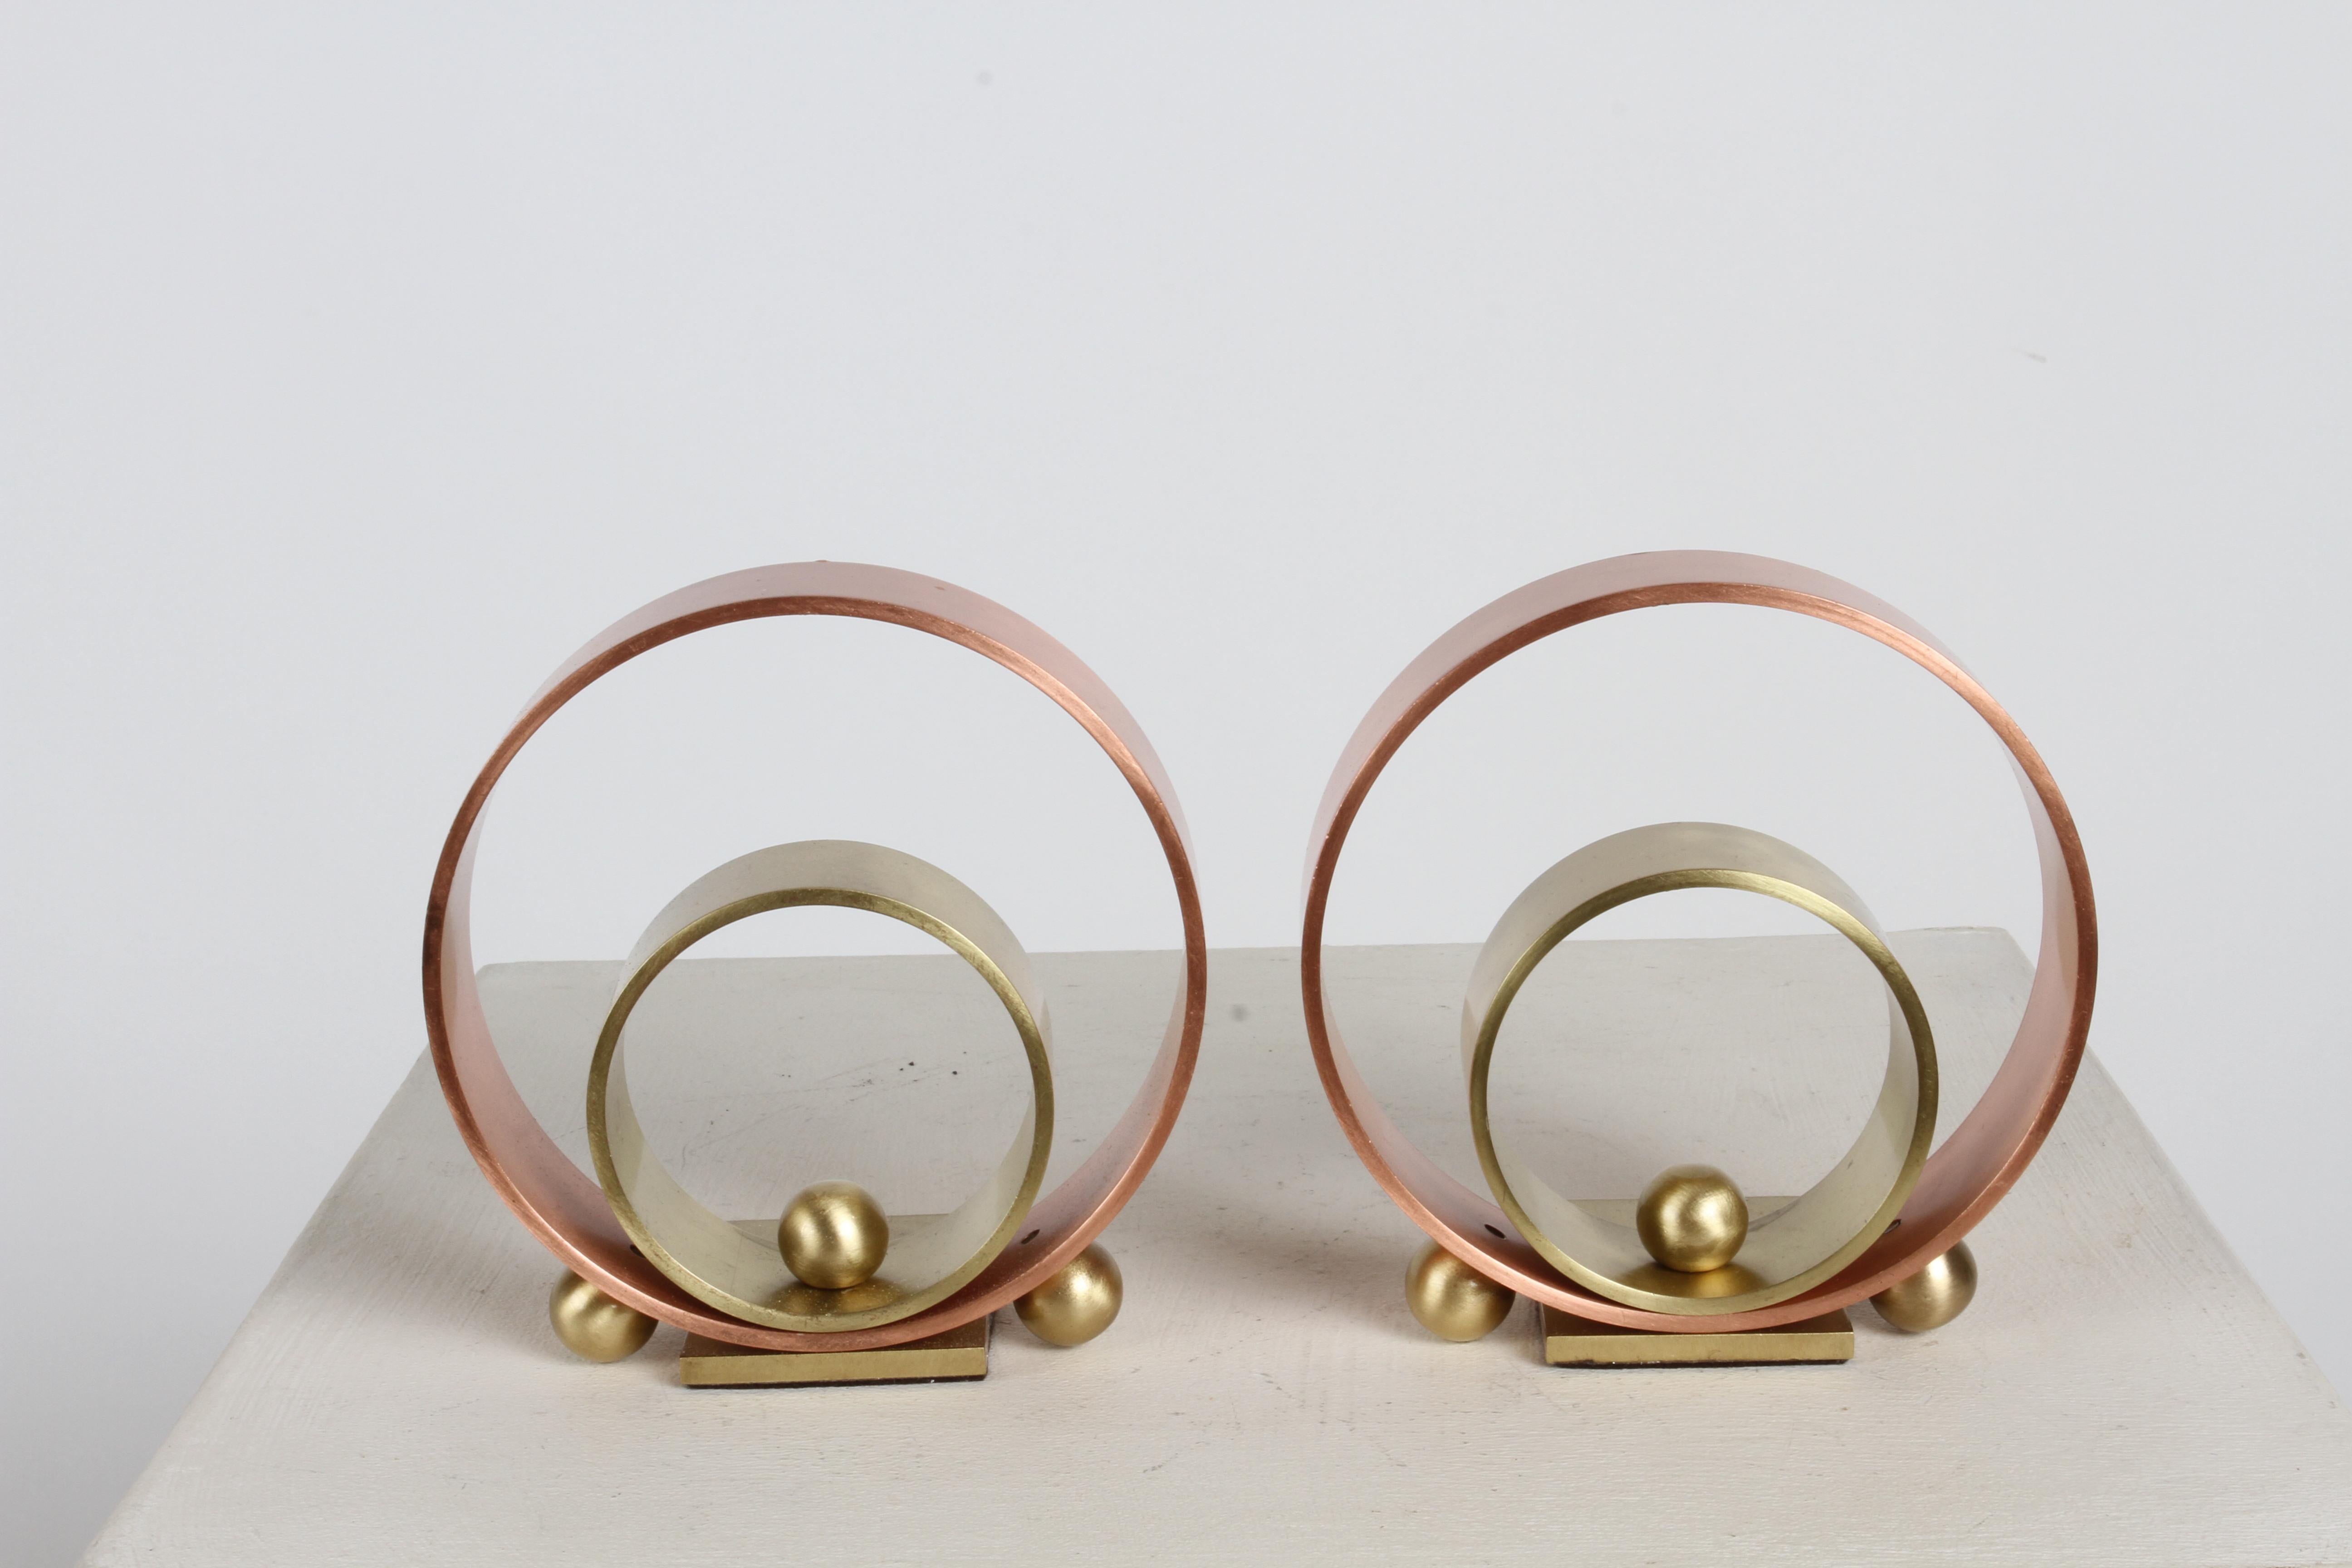 Une paire de serre-livres Art déco de Walter Von Nessen présente deux anneaux concentriques de laiton et de cuivre avec trois sphères sur chacun d'eux. Ces serre-livres sont un excellent exemple de  l'influence du Machin Ages sur l'Art Déco en